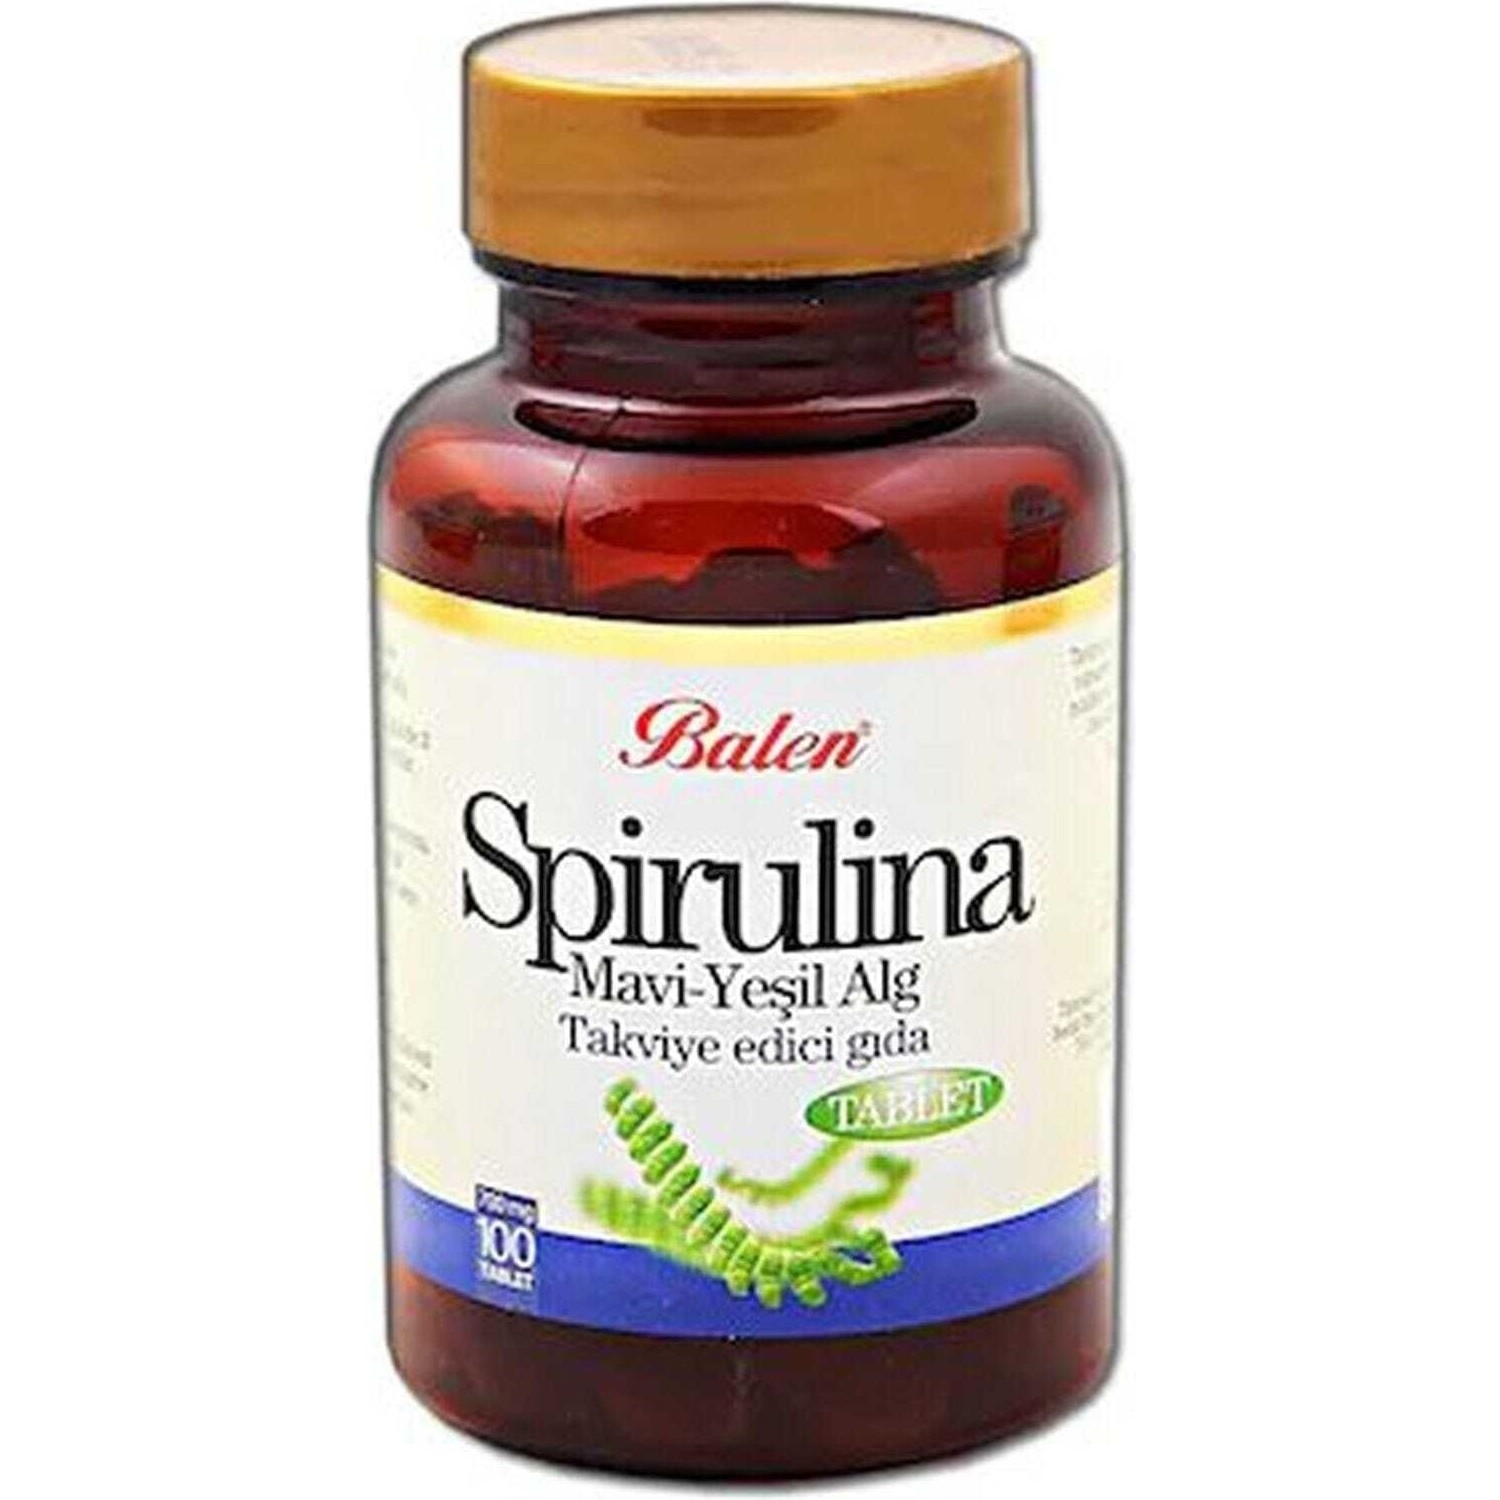 Пищевая добавка Balen Spirulina 700 мг, 100 таблеток пищевая добавка balen spirulina 740 мг 100 таблеток